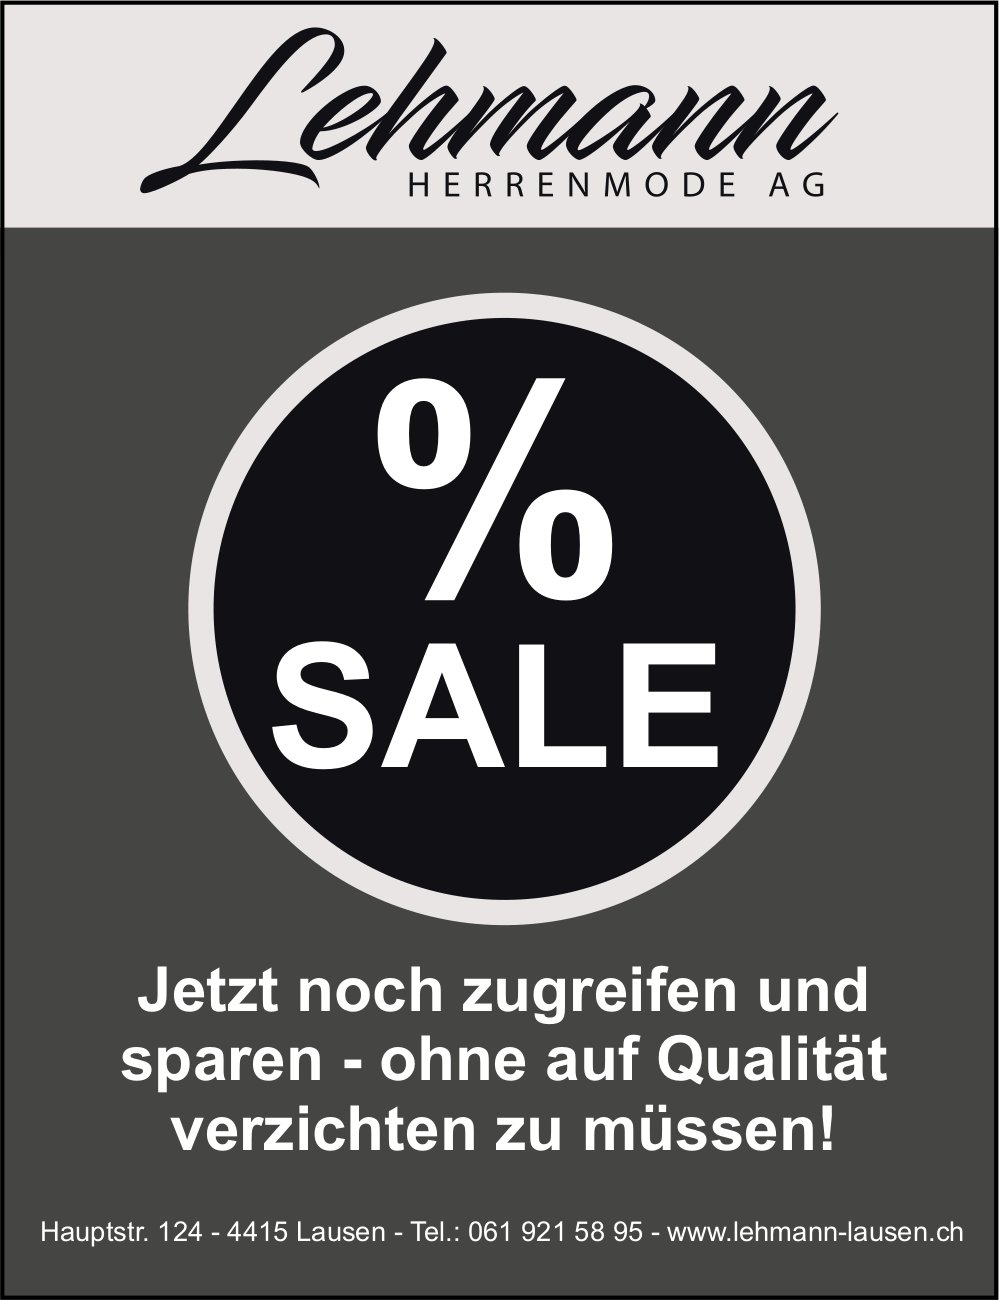 Lehmann Herrenmode AG, Lausen - Sale! Jetzt noch zugreifen